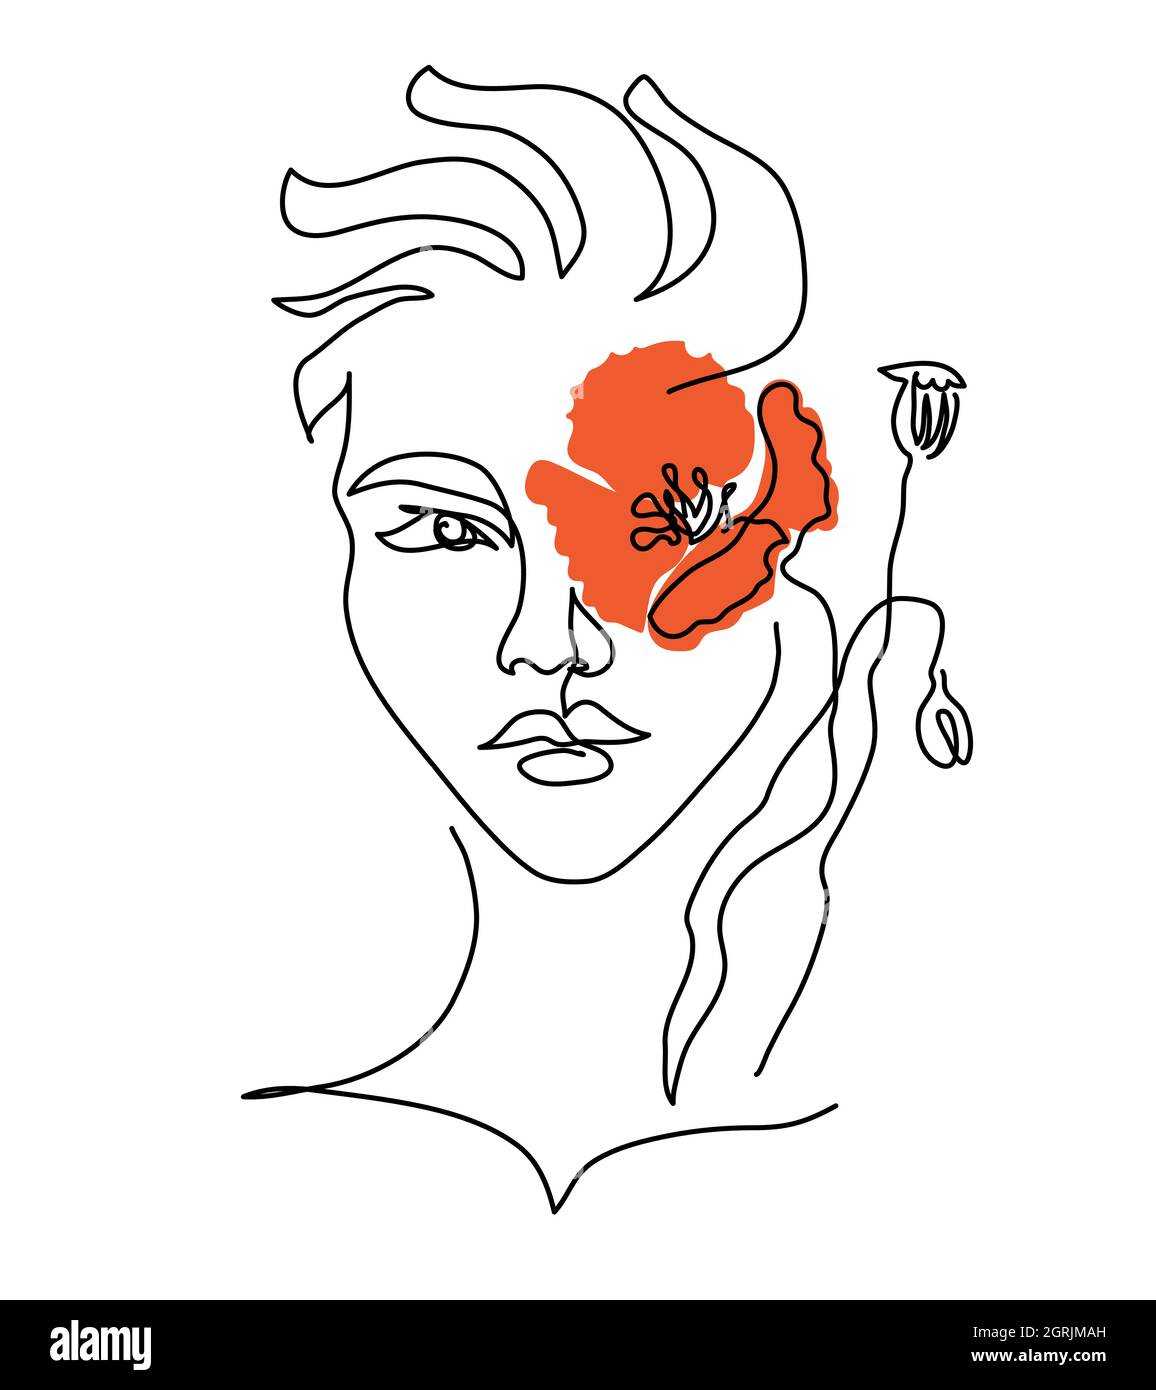 Frauenkopf lineart Zeichnung mit roter Mohnblume statt Auge. Moderne kontinuierliche Linienvektor Illustration von Kopf und Farbe Blume Stock Vektor